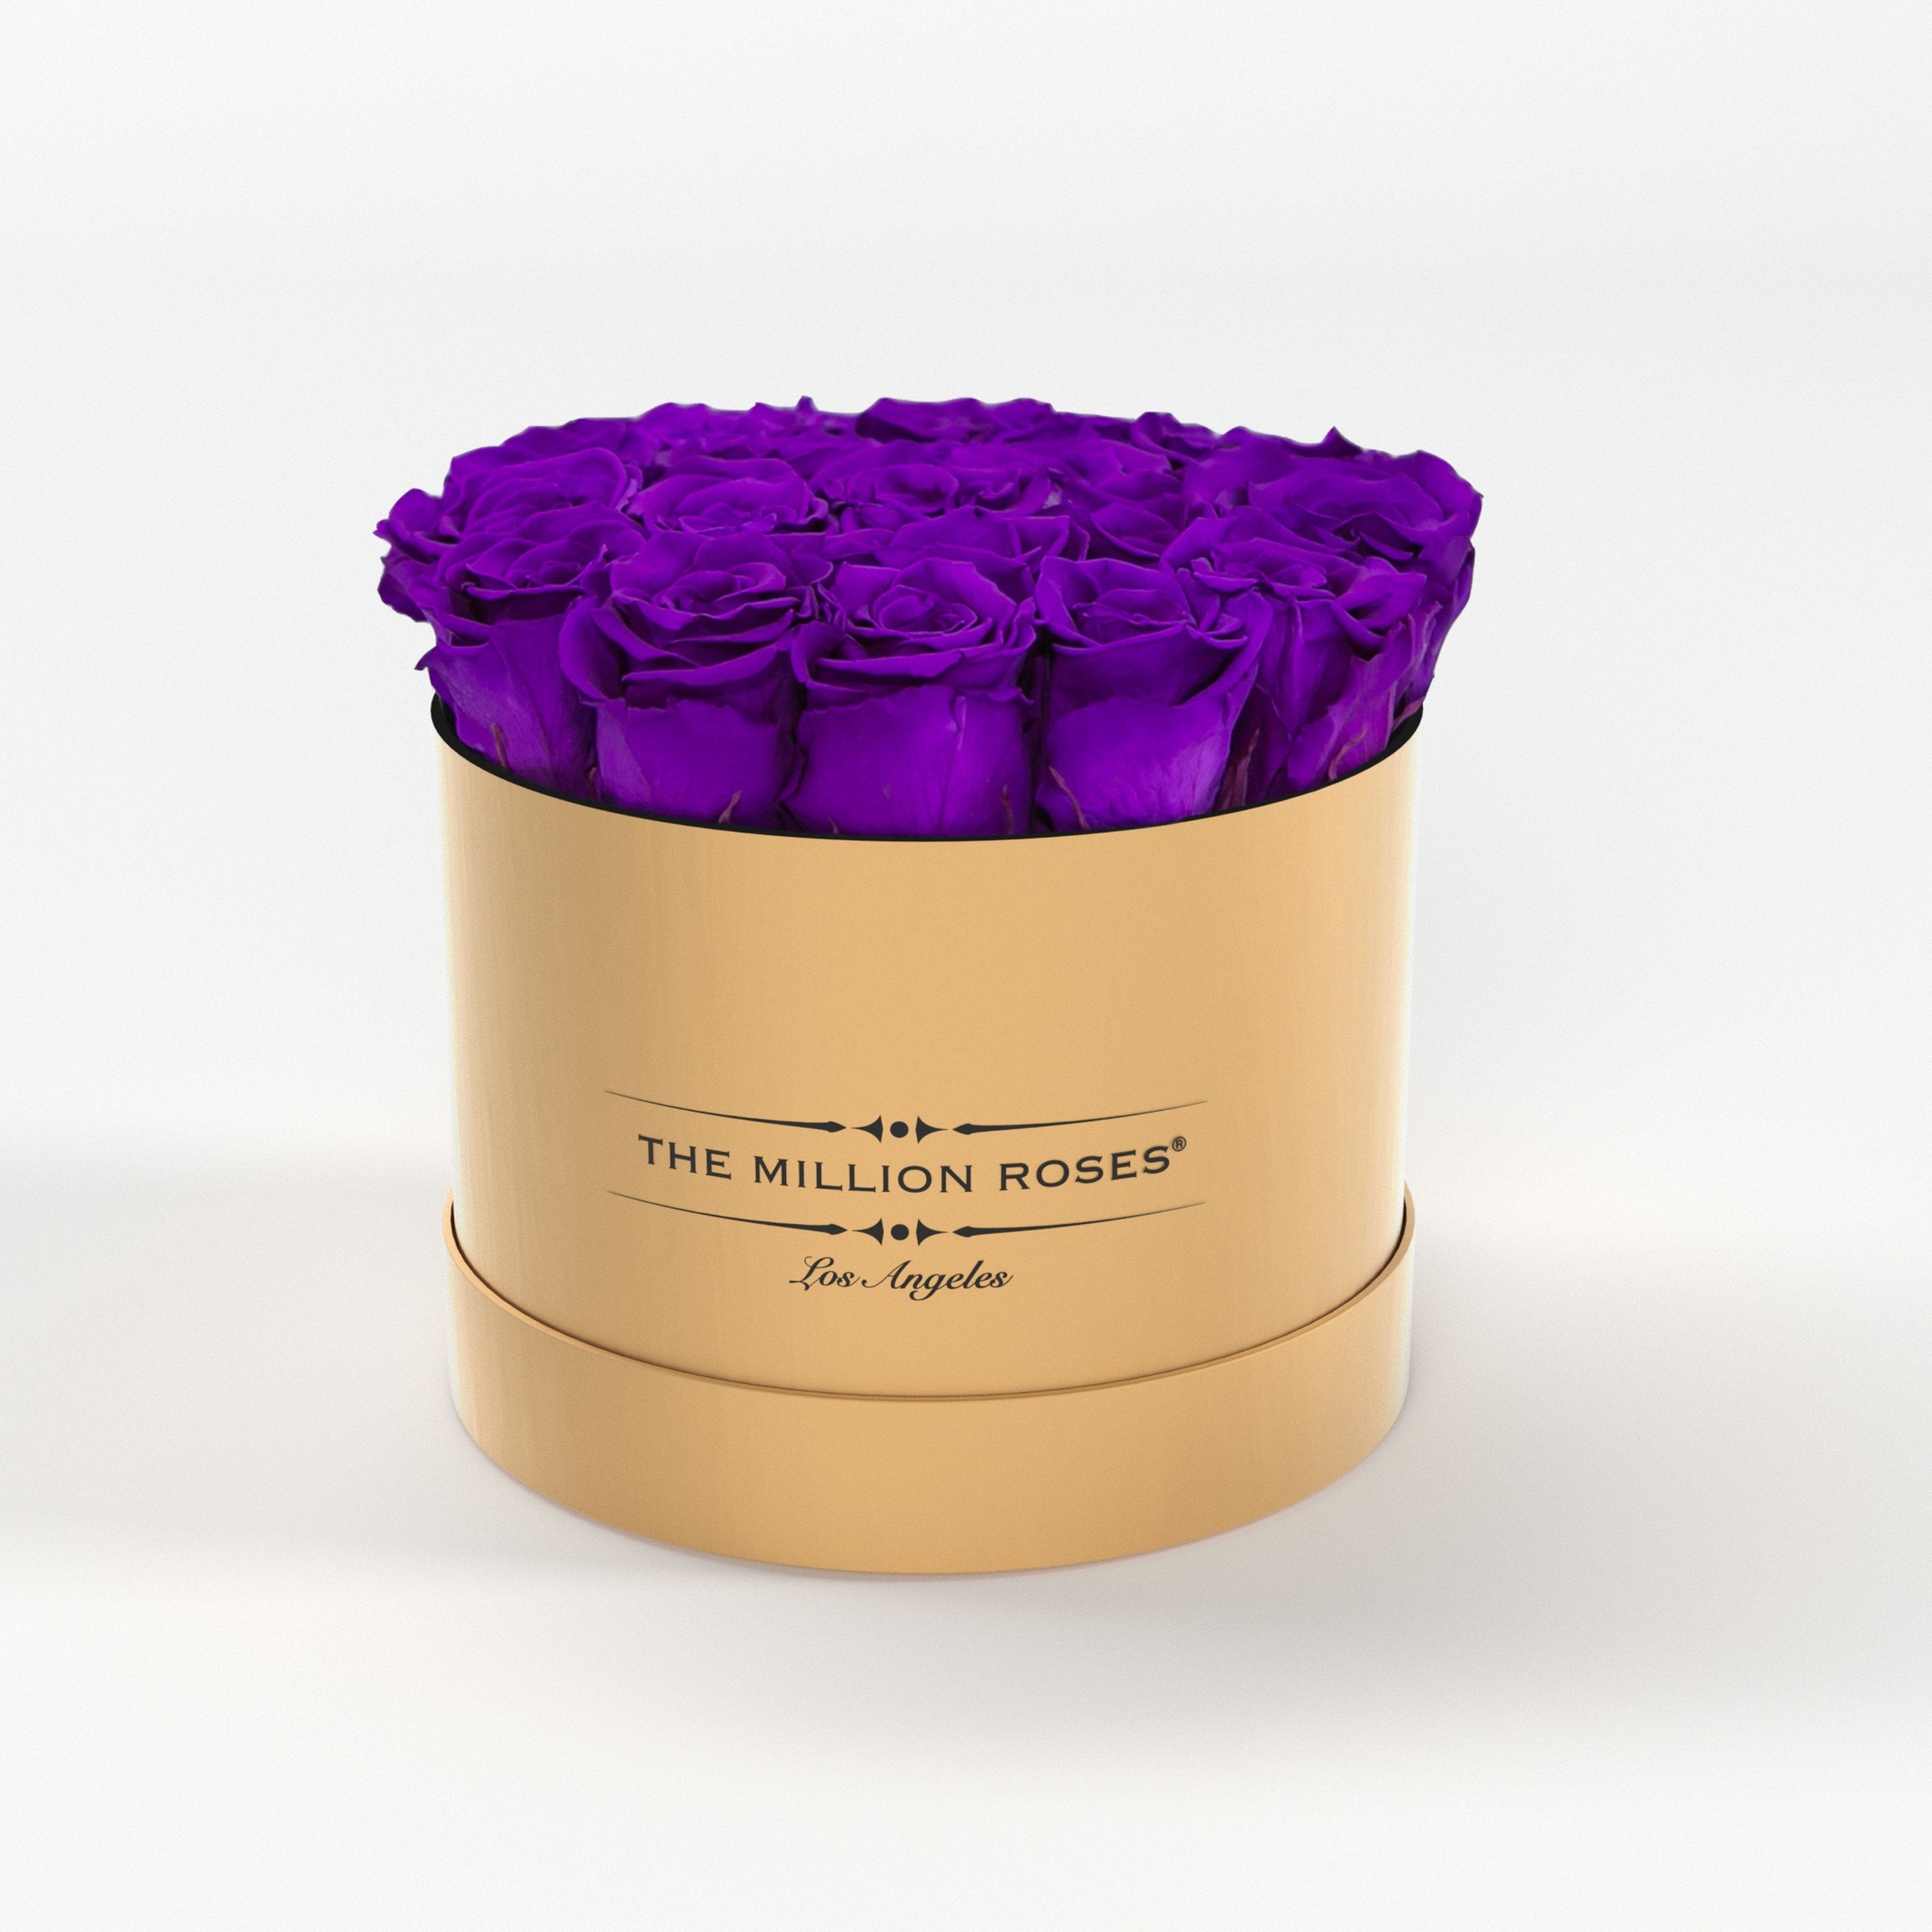 ( LA ) Gold - Classic Box with Bright Purple Roses